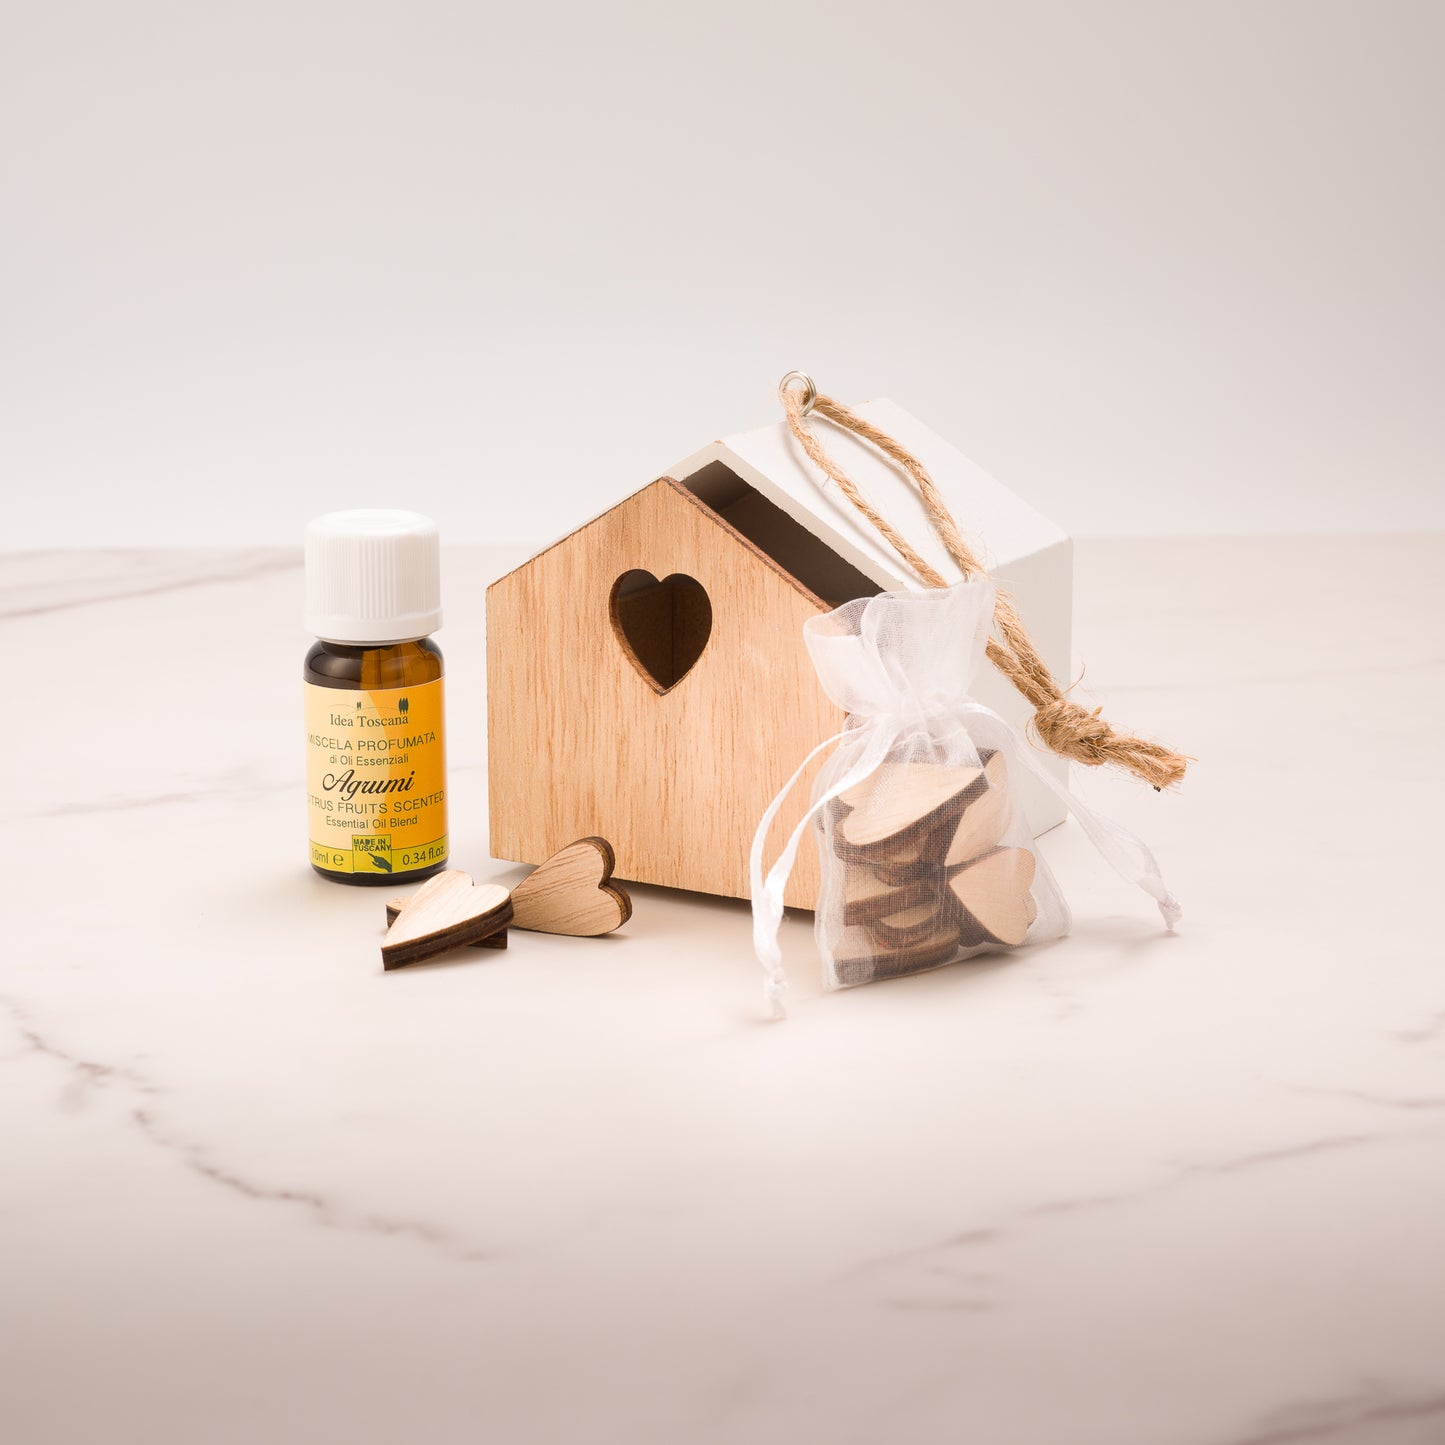 Gift idea Box of essential oils - Idea Toscana